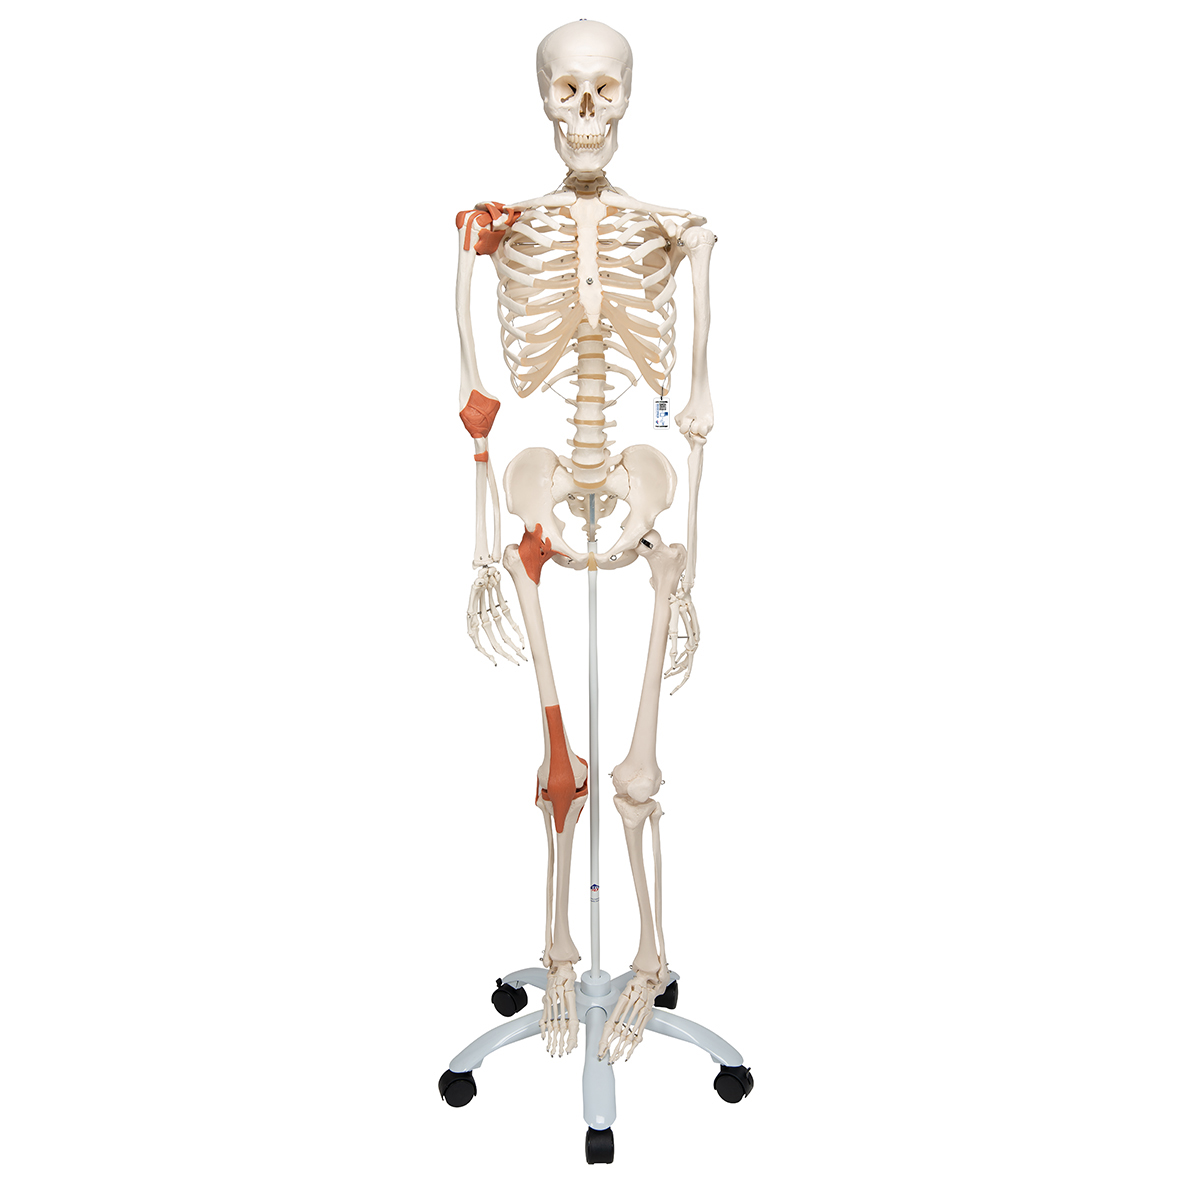 Lebensgröße 1 1 Kniegelenk Anatomisches Modell Skelett Menschliche Anatomie 